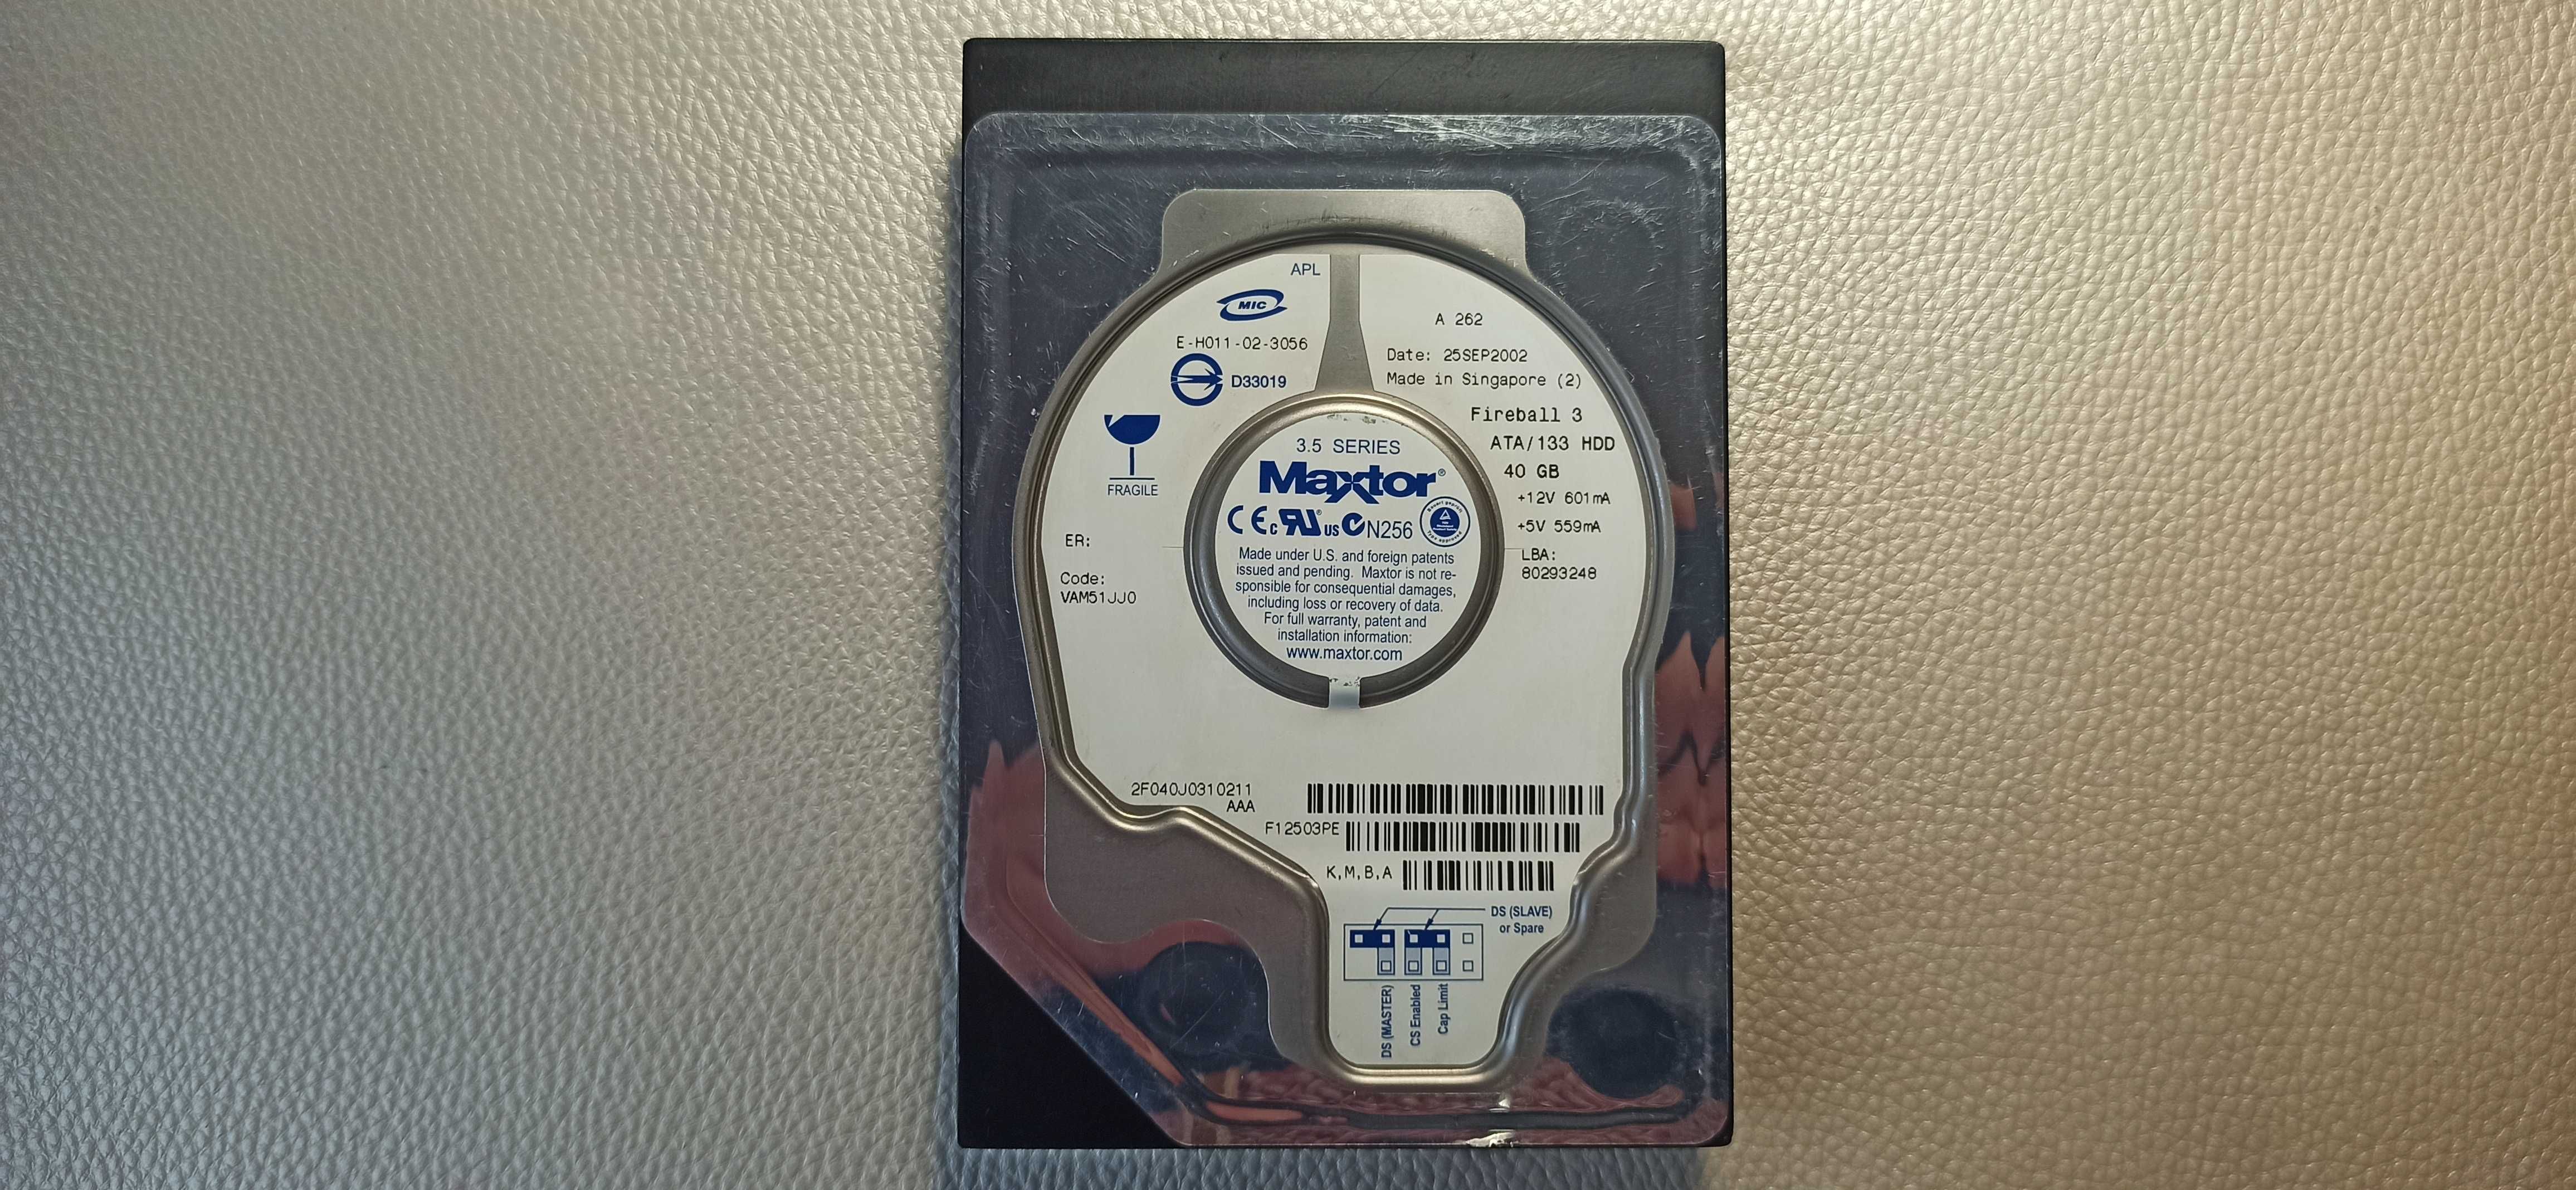 Dysk HDD Maxtor Fireball 3 40 GB ATA/133 sprawny